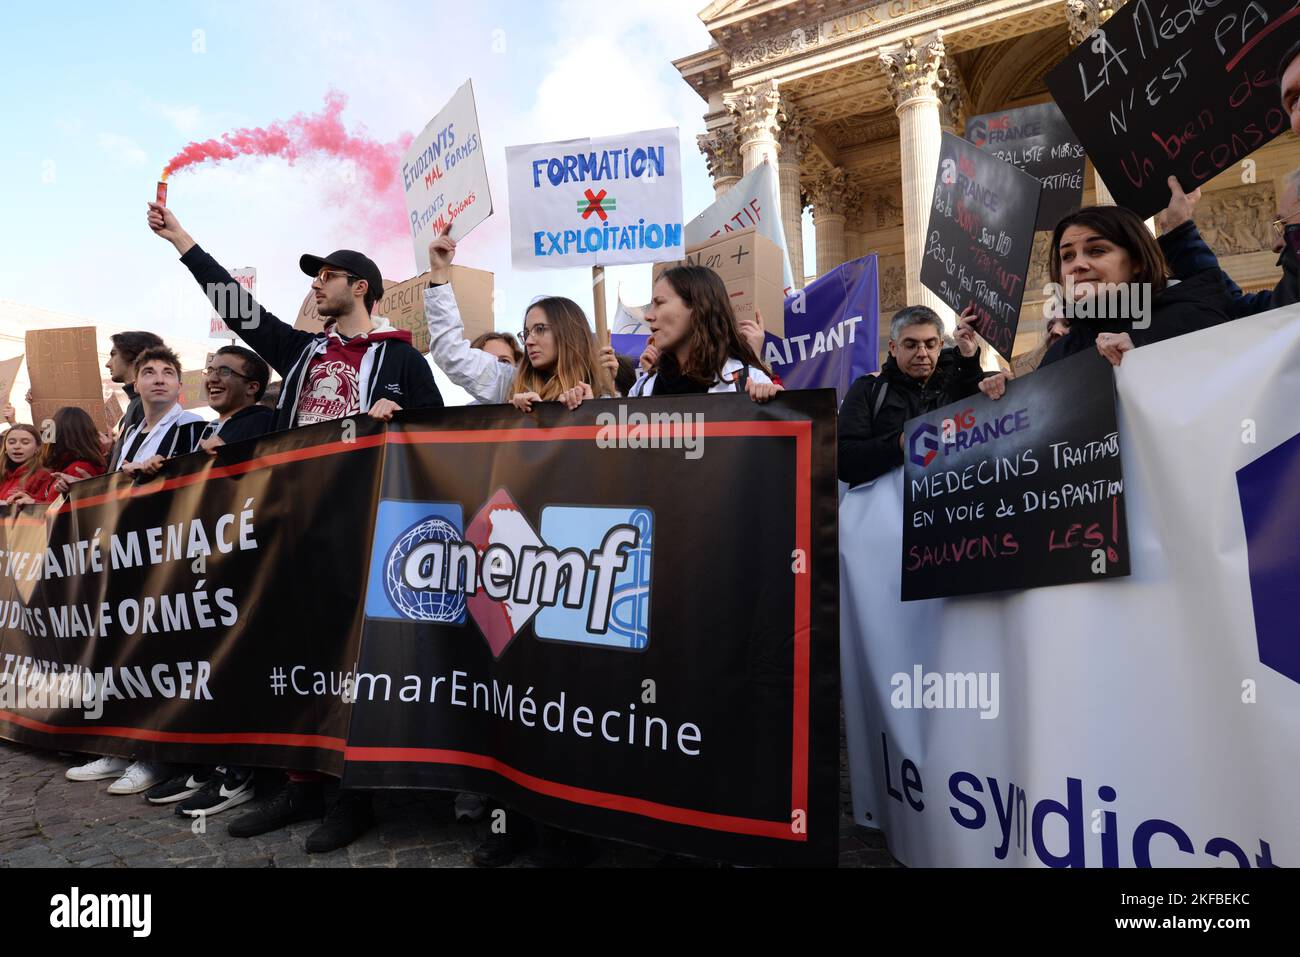 Extration des étudiants et internes de médecine contre la nouvelle réforme des études de médecine, avec la participation du syndicat MG France Foto Stock